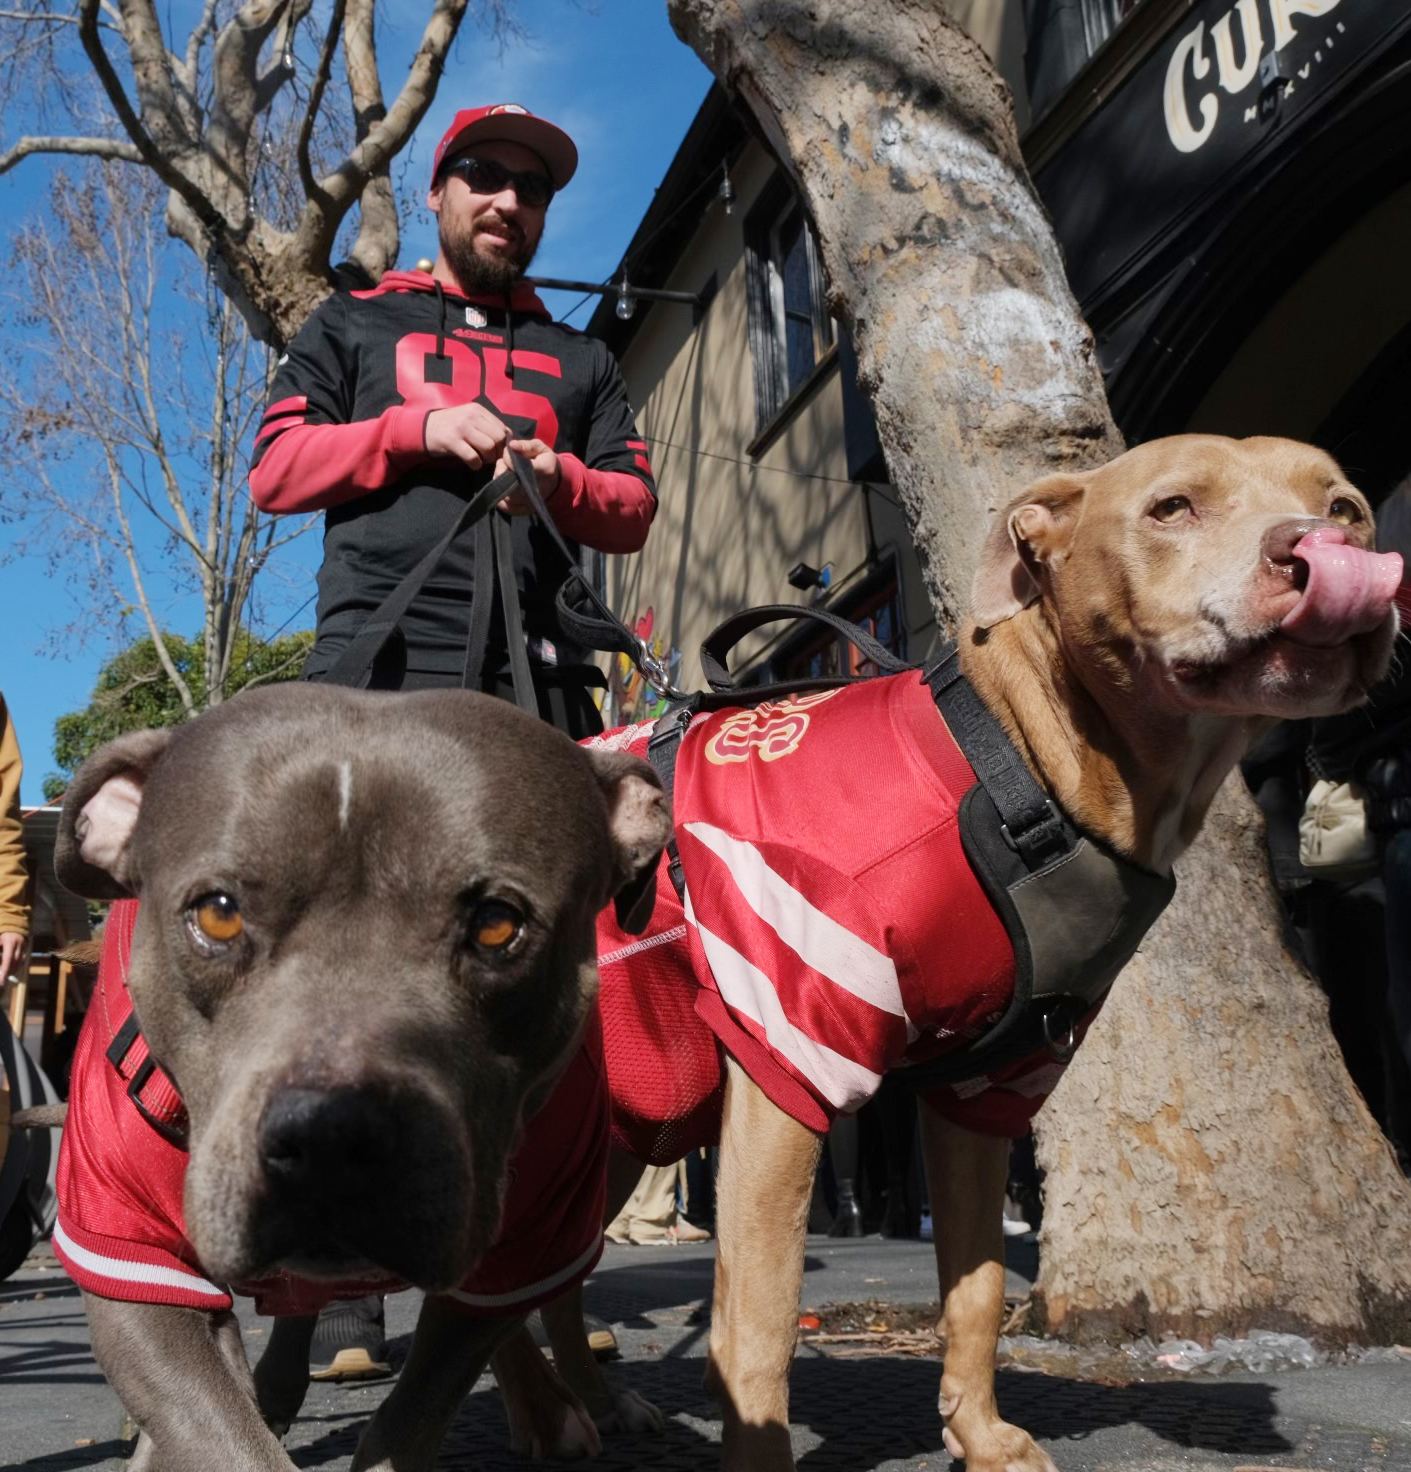 A 49ers fan in a black jersey walks two dogs in red jerseys